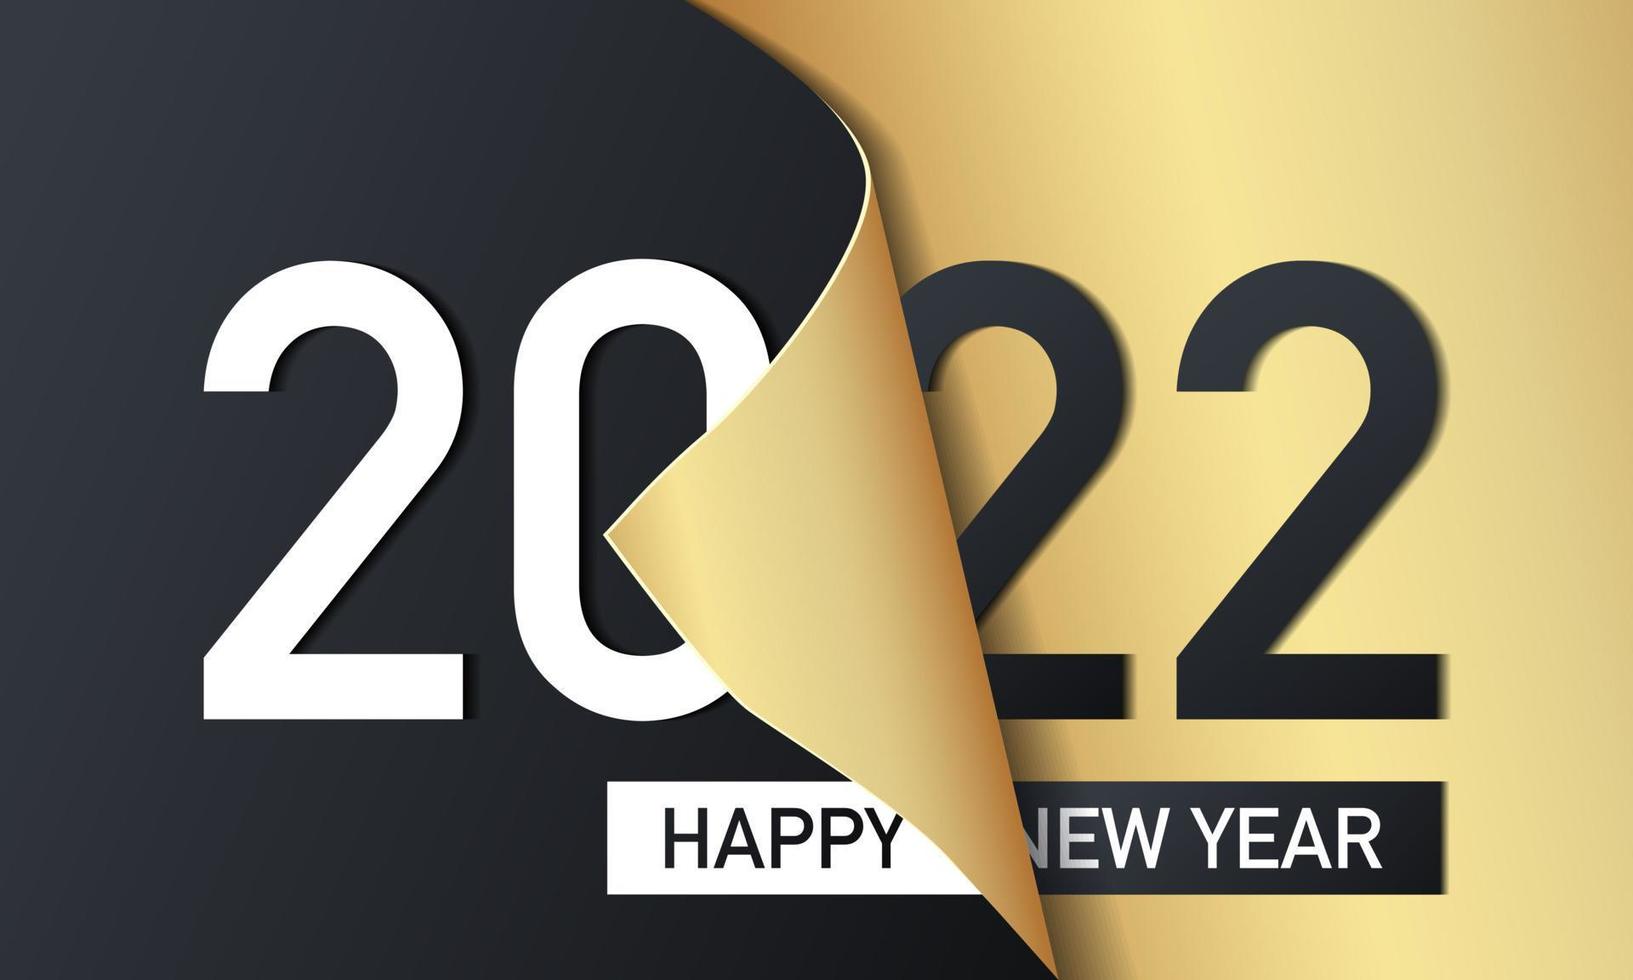 2022 felice anno nuovo sfondo design. illustrazione vettoriale. vettore